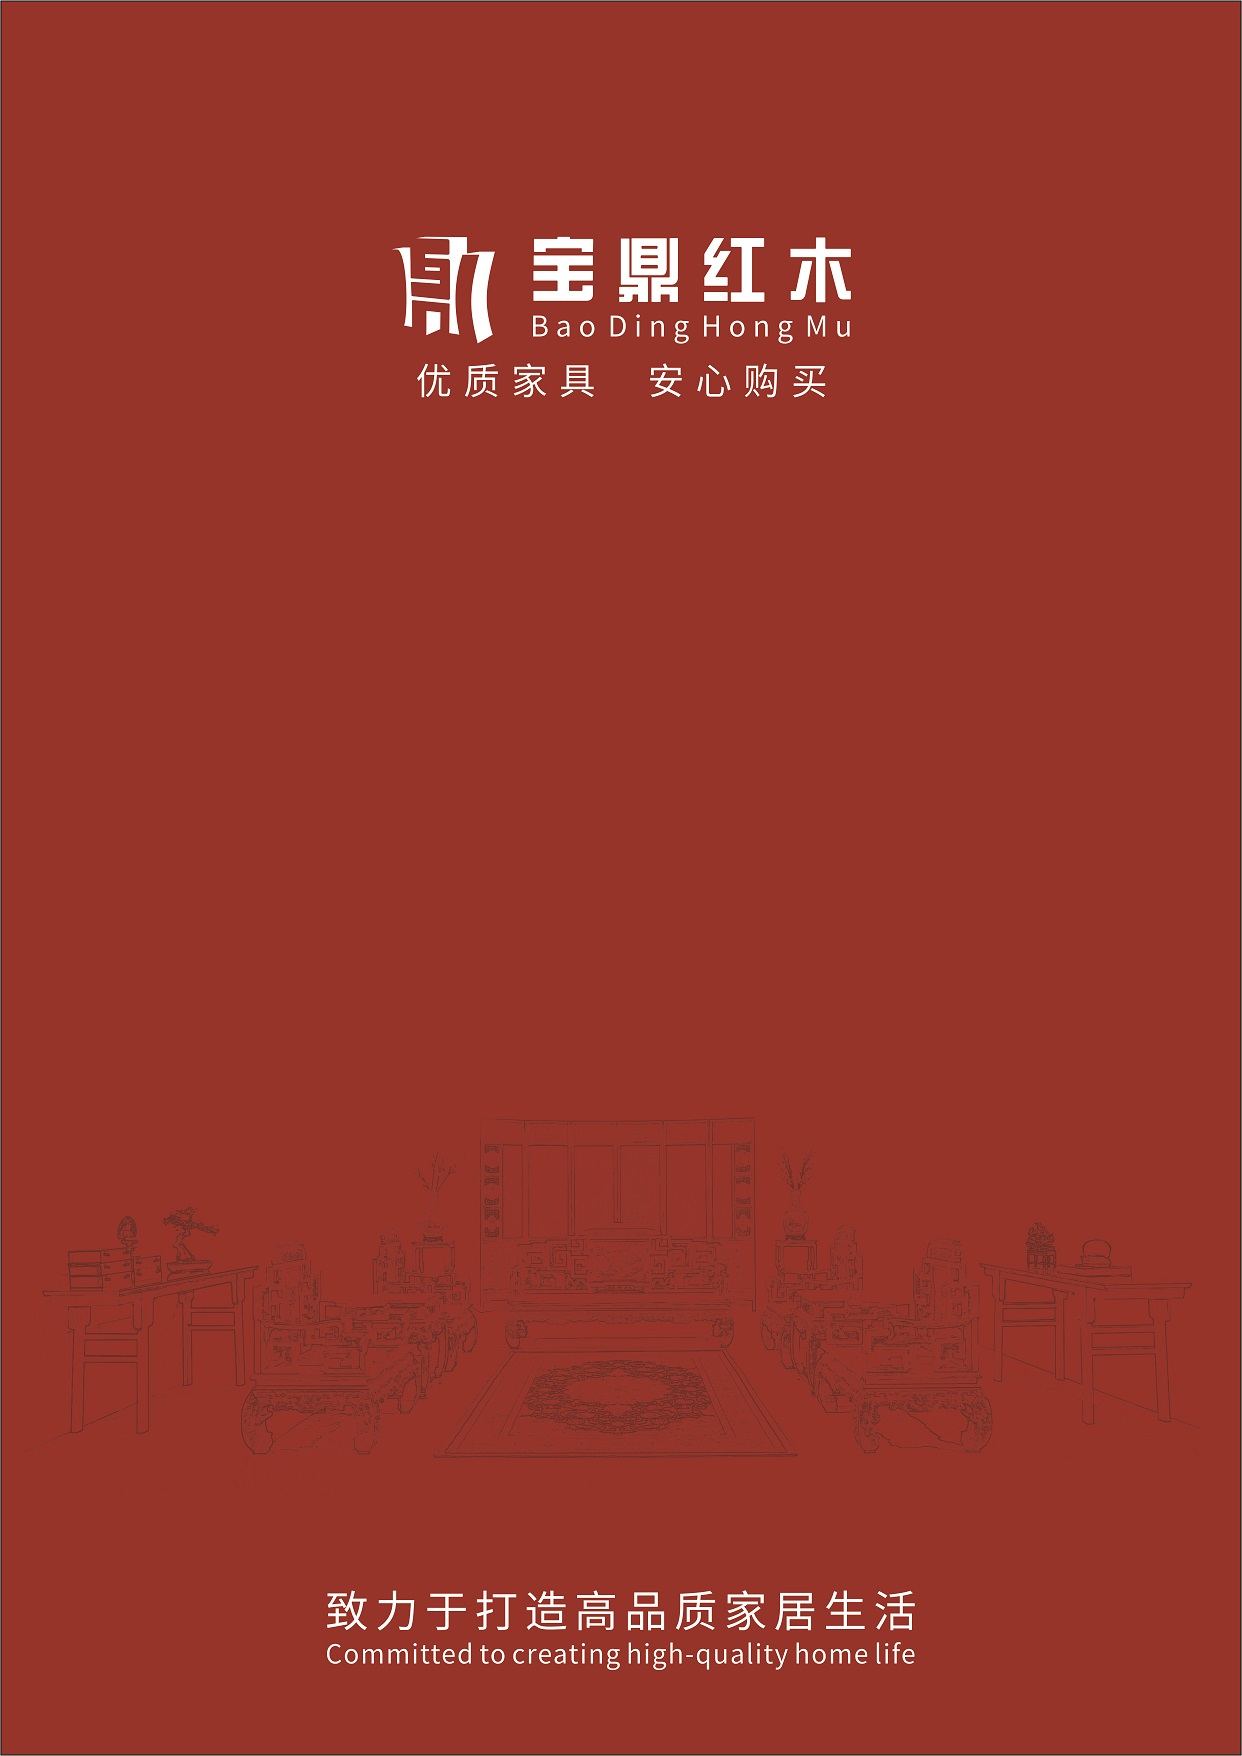 宝鼎红木家具系列宣传画册